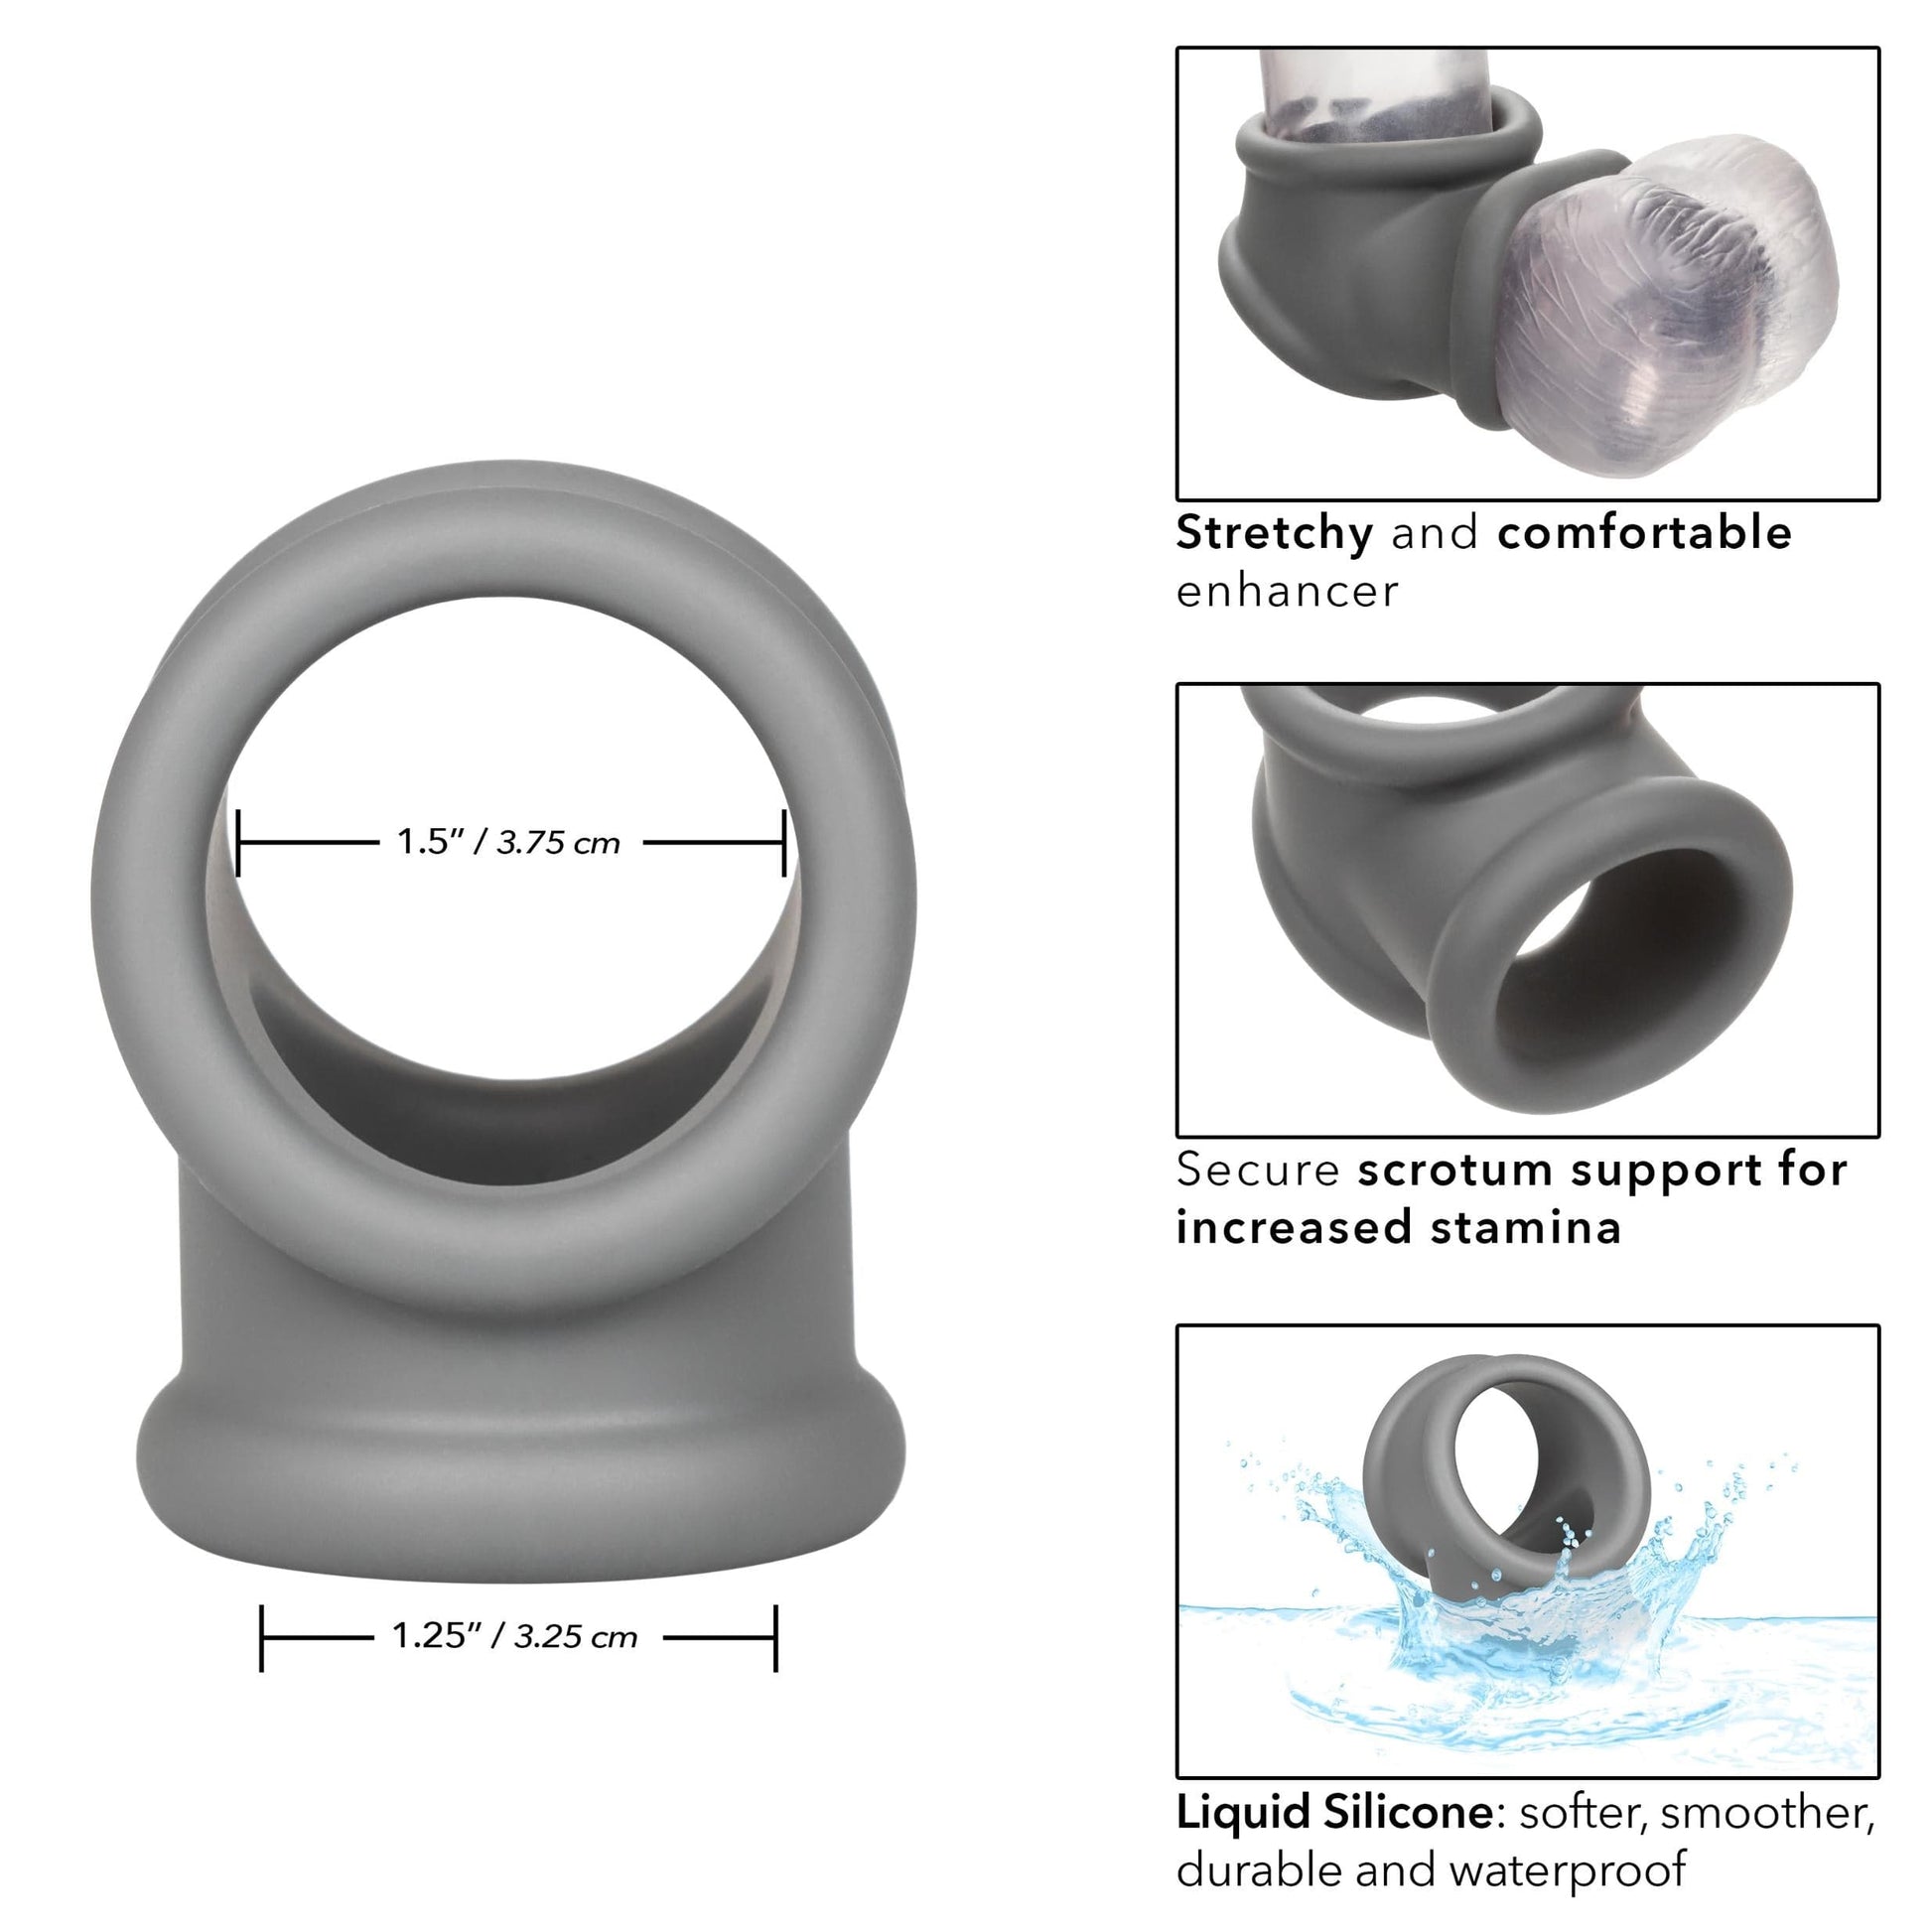 alpha liquid silicone precision ring gray